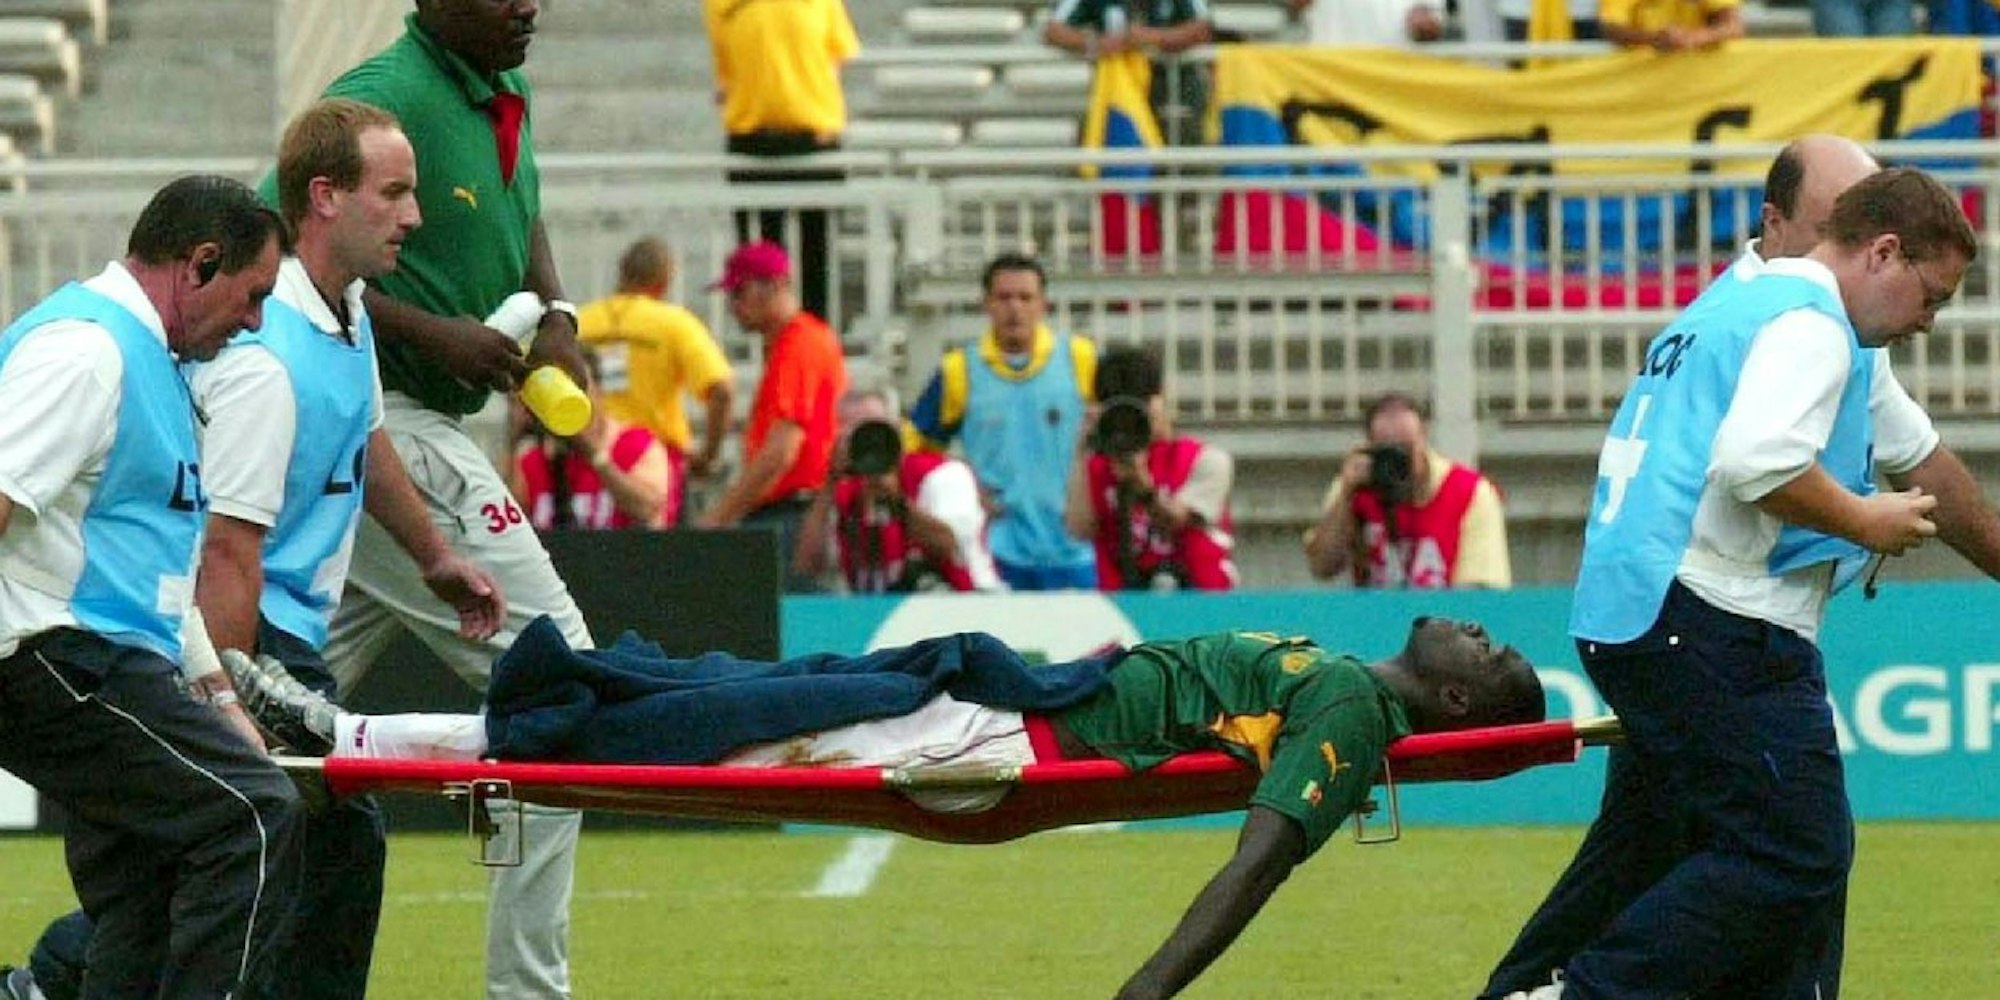 Rettungshelfer und Offizielle tragen Kameruns Nationalspieler Marc-Viven Foe aus dem Stadion, nachdem er auf dem Fußballfeld zusammengebrochen war. Wenig später starb er an Herzversagen.